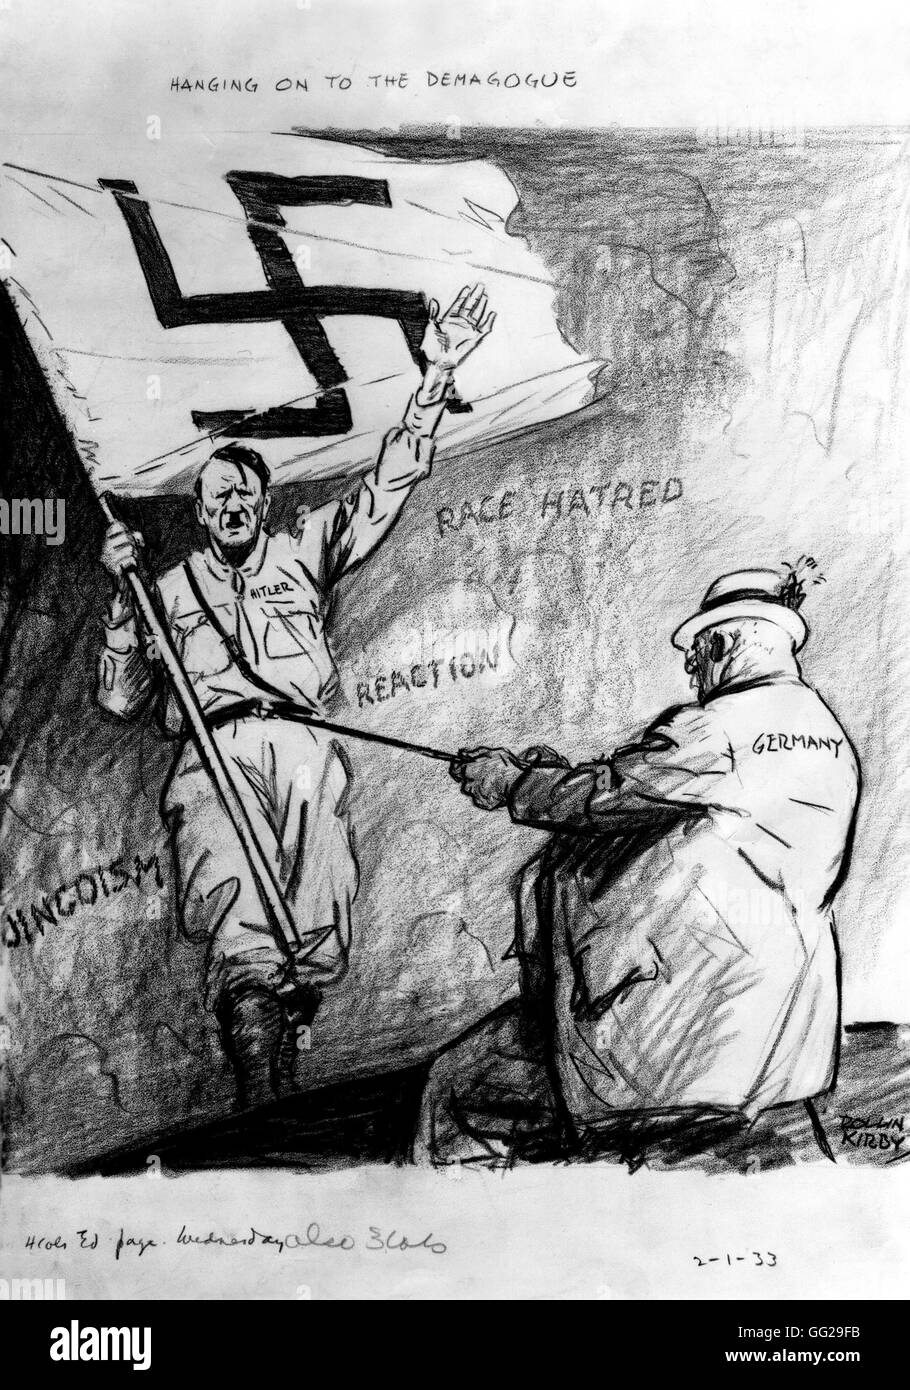 Vignetta satirica da Kirby: conservatore Germania vuole attirare demagogo Hitler 1933 Germania Washington. La biblioteca del congresso Foto Stock